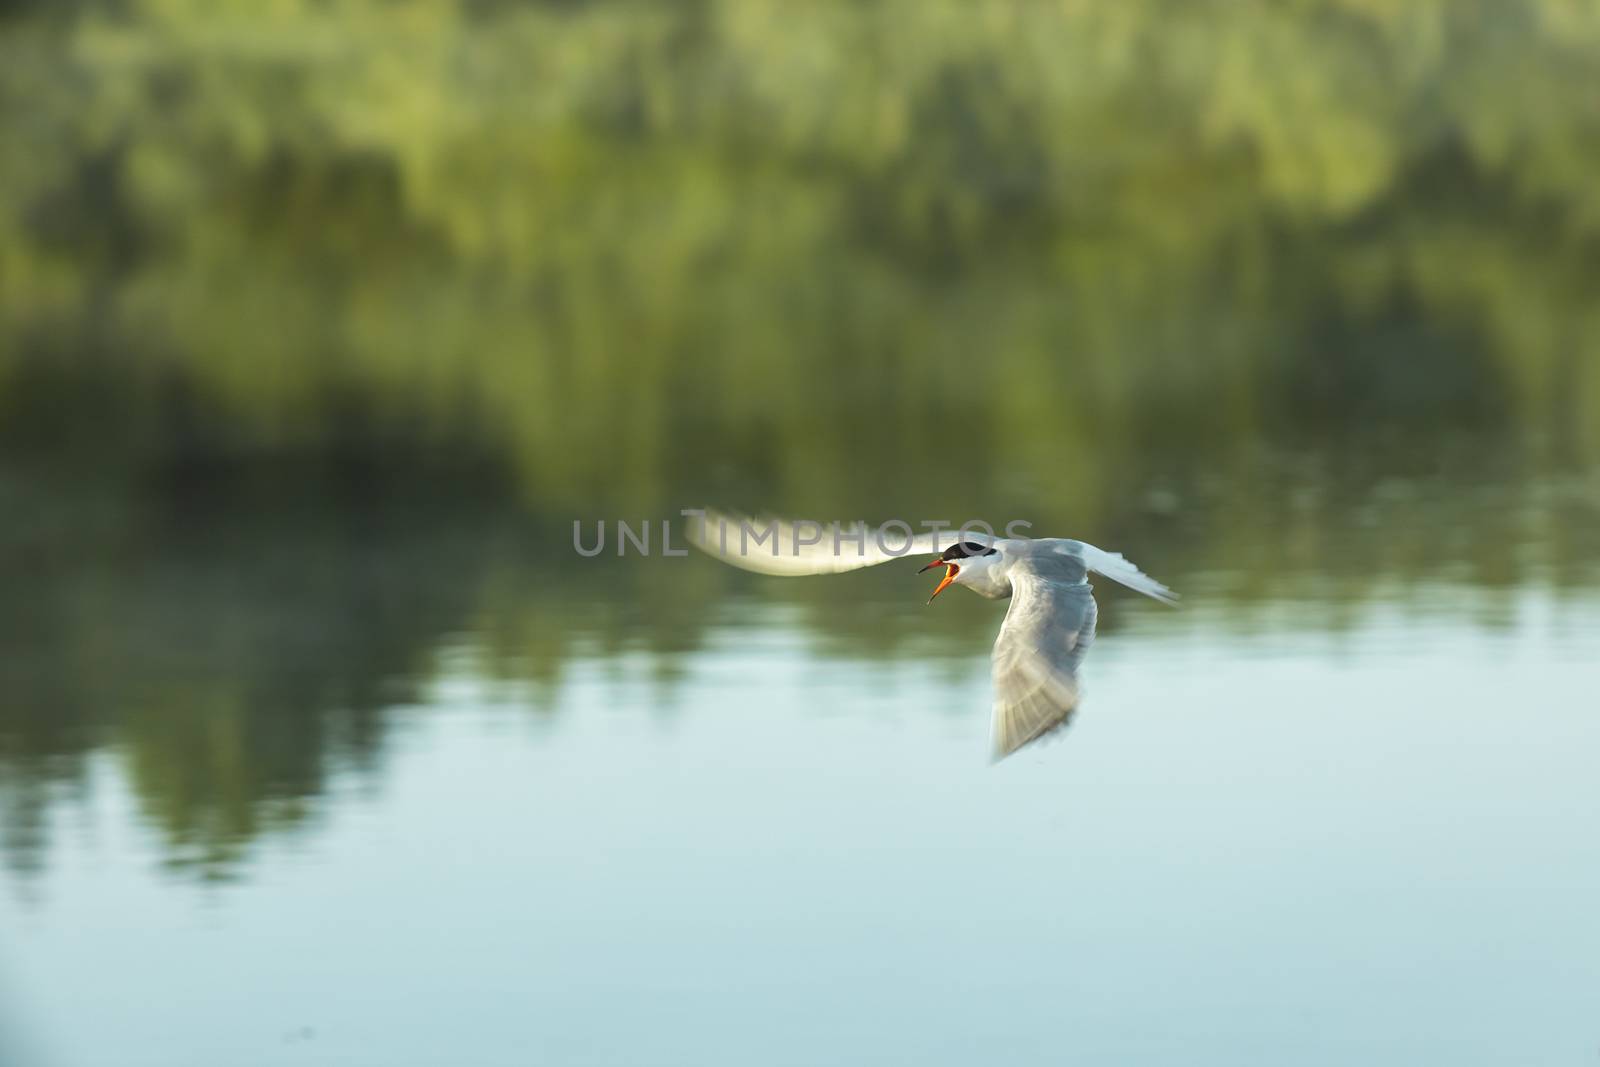 A beautiful tern bird flies over a pond